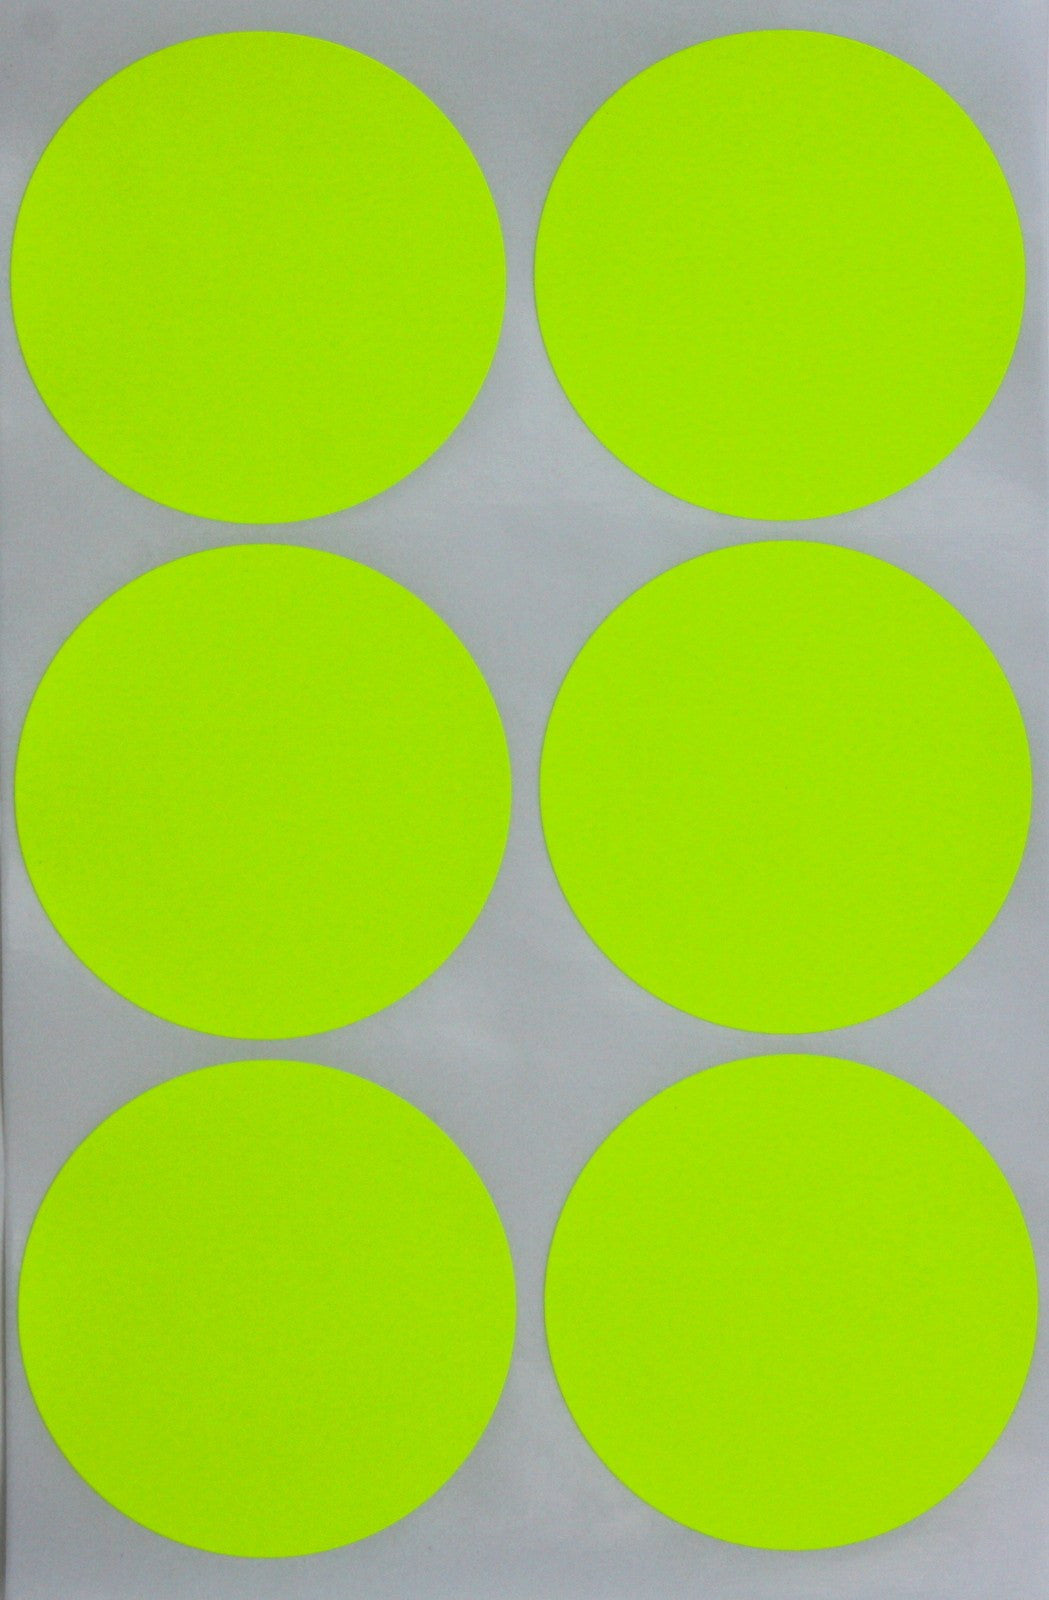 $4.99 Price Stickers Fluorescent Green 3/4 Round